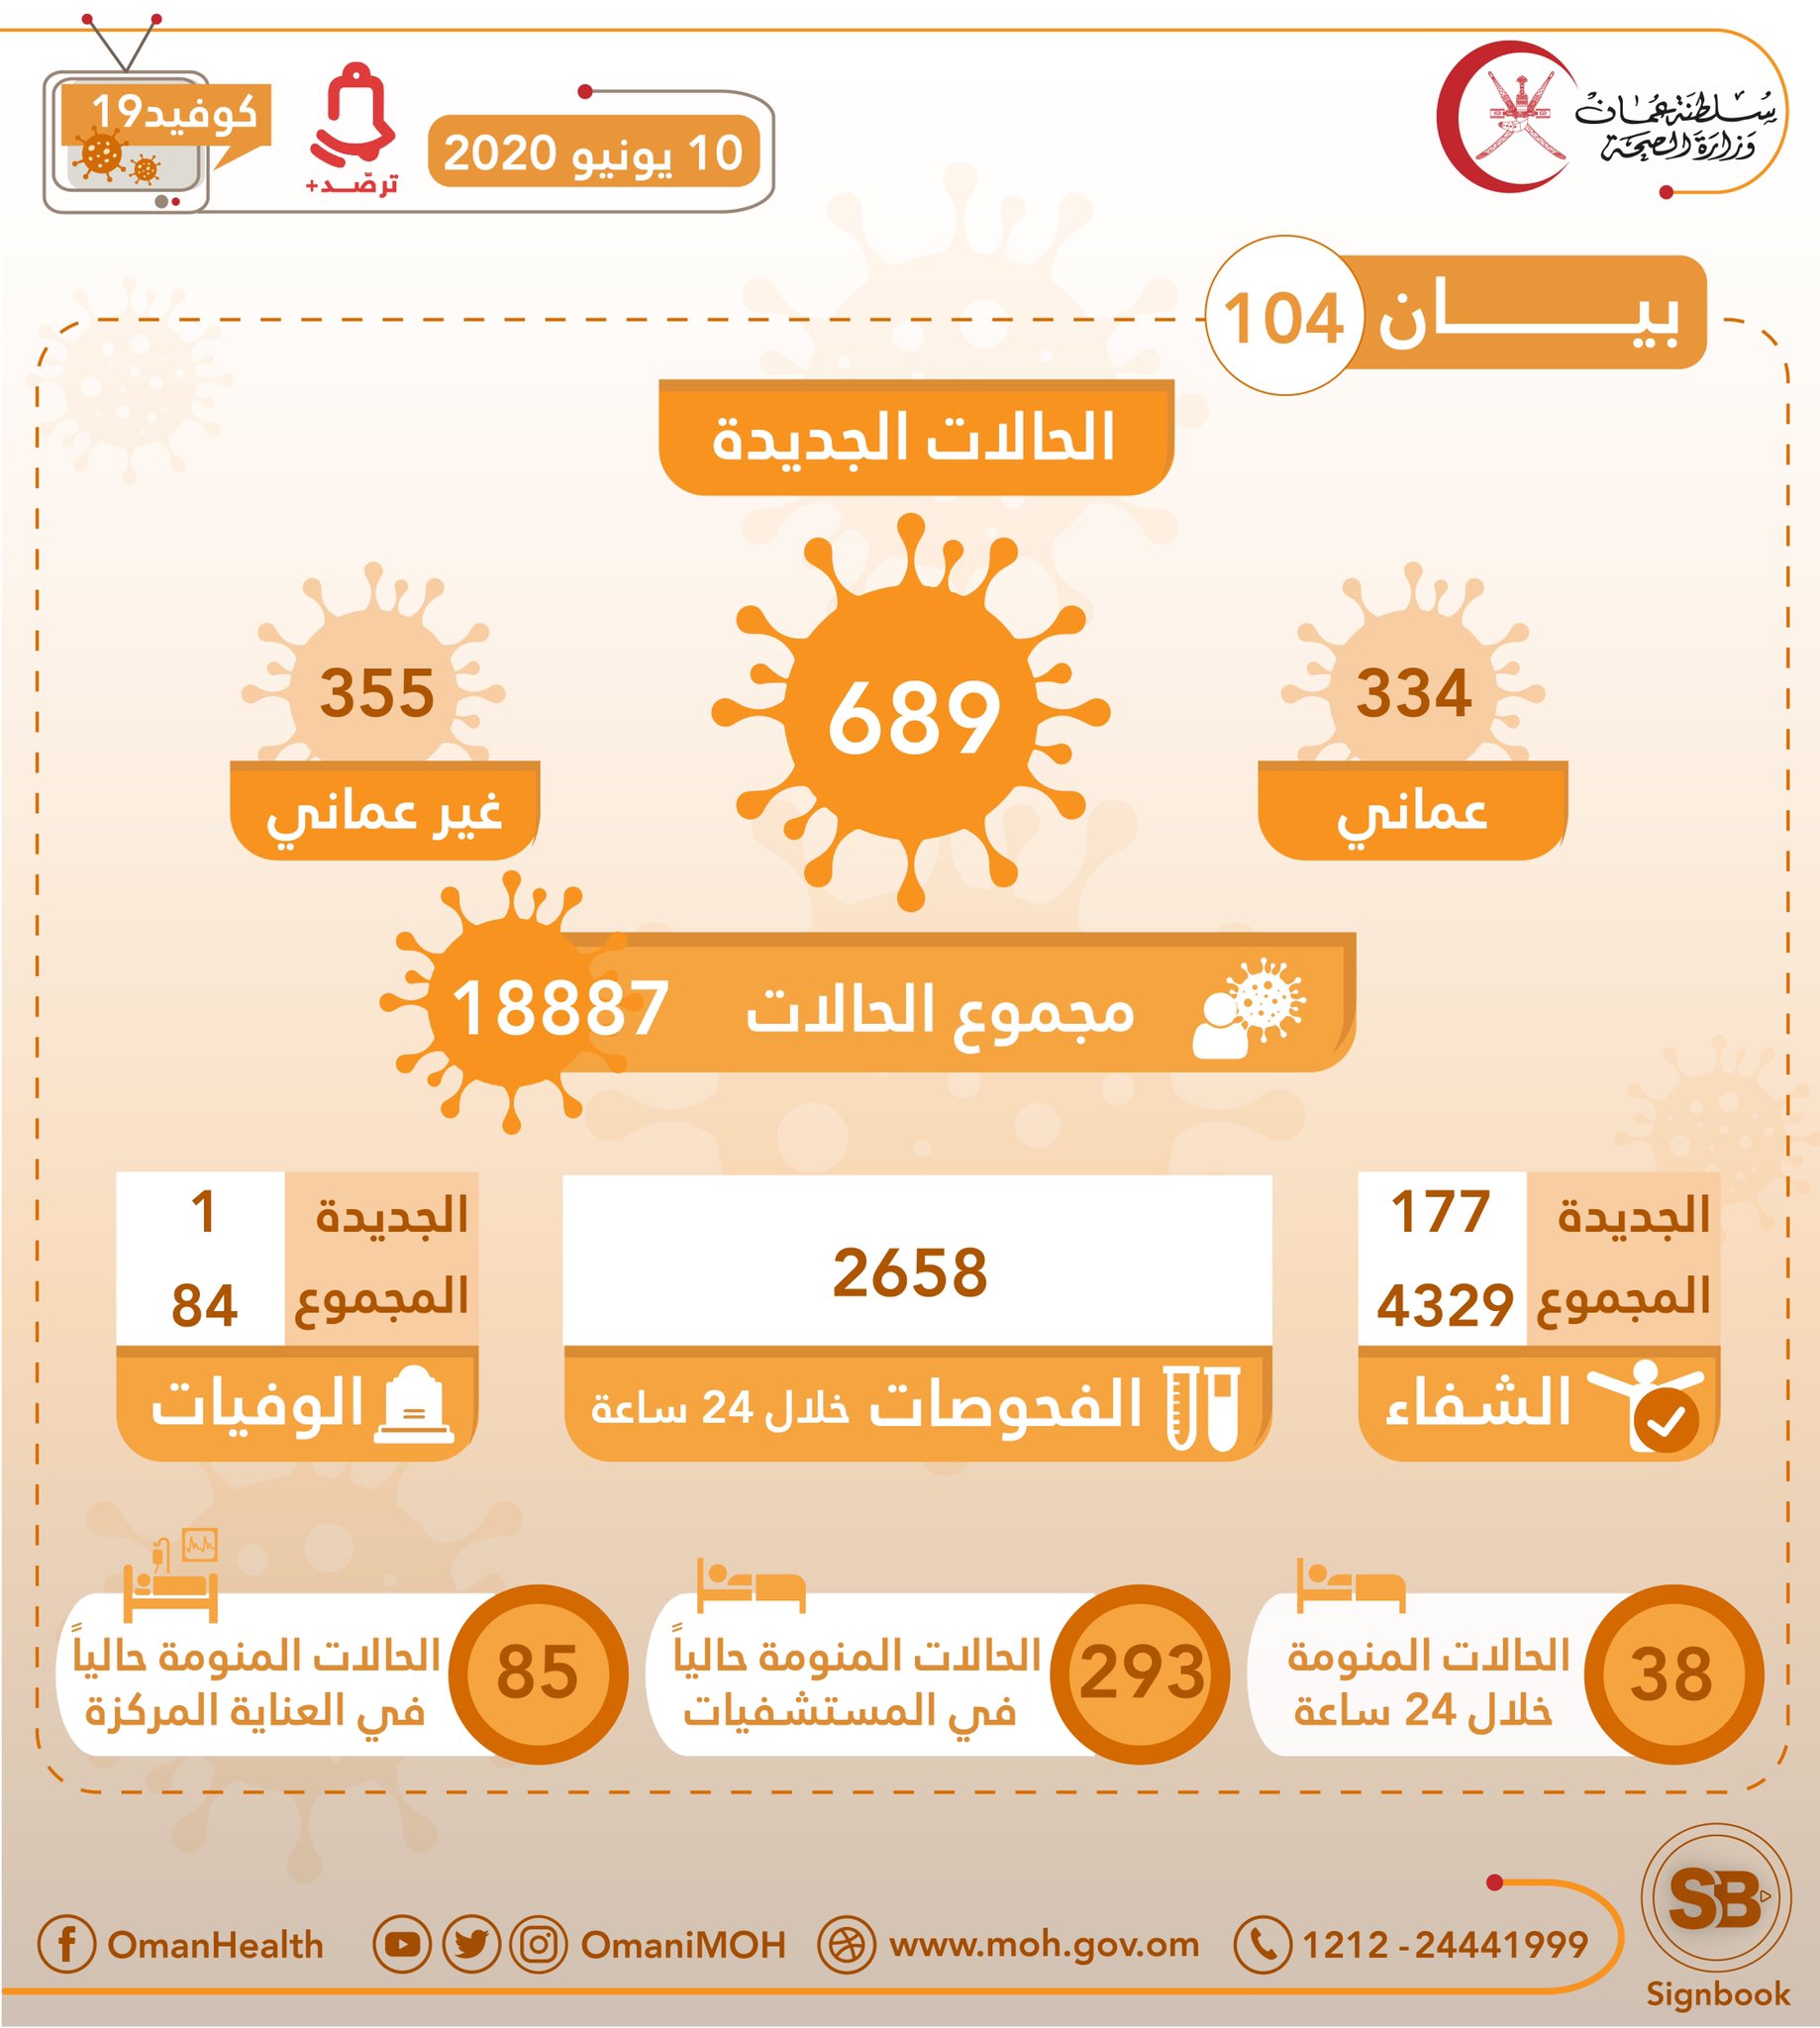 689 حالة جديدة مسجلة في عمان ، مجموع الحالات 18 ، 887